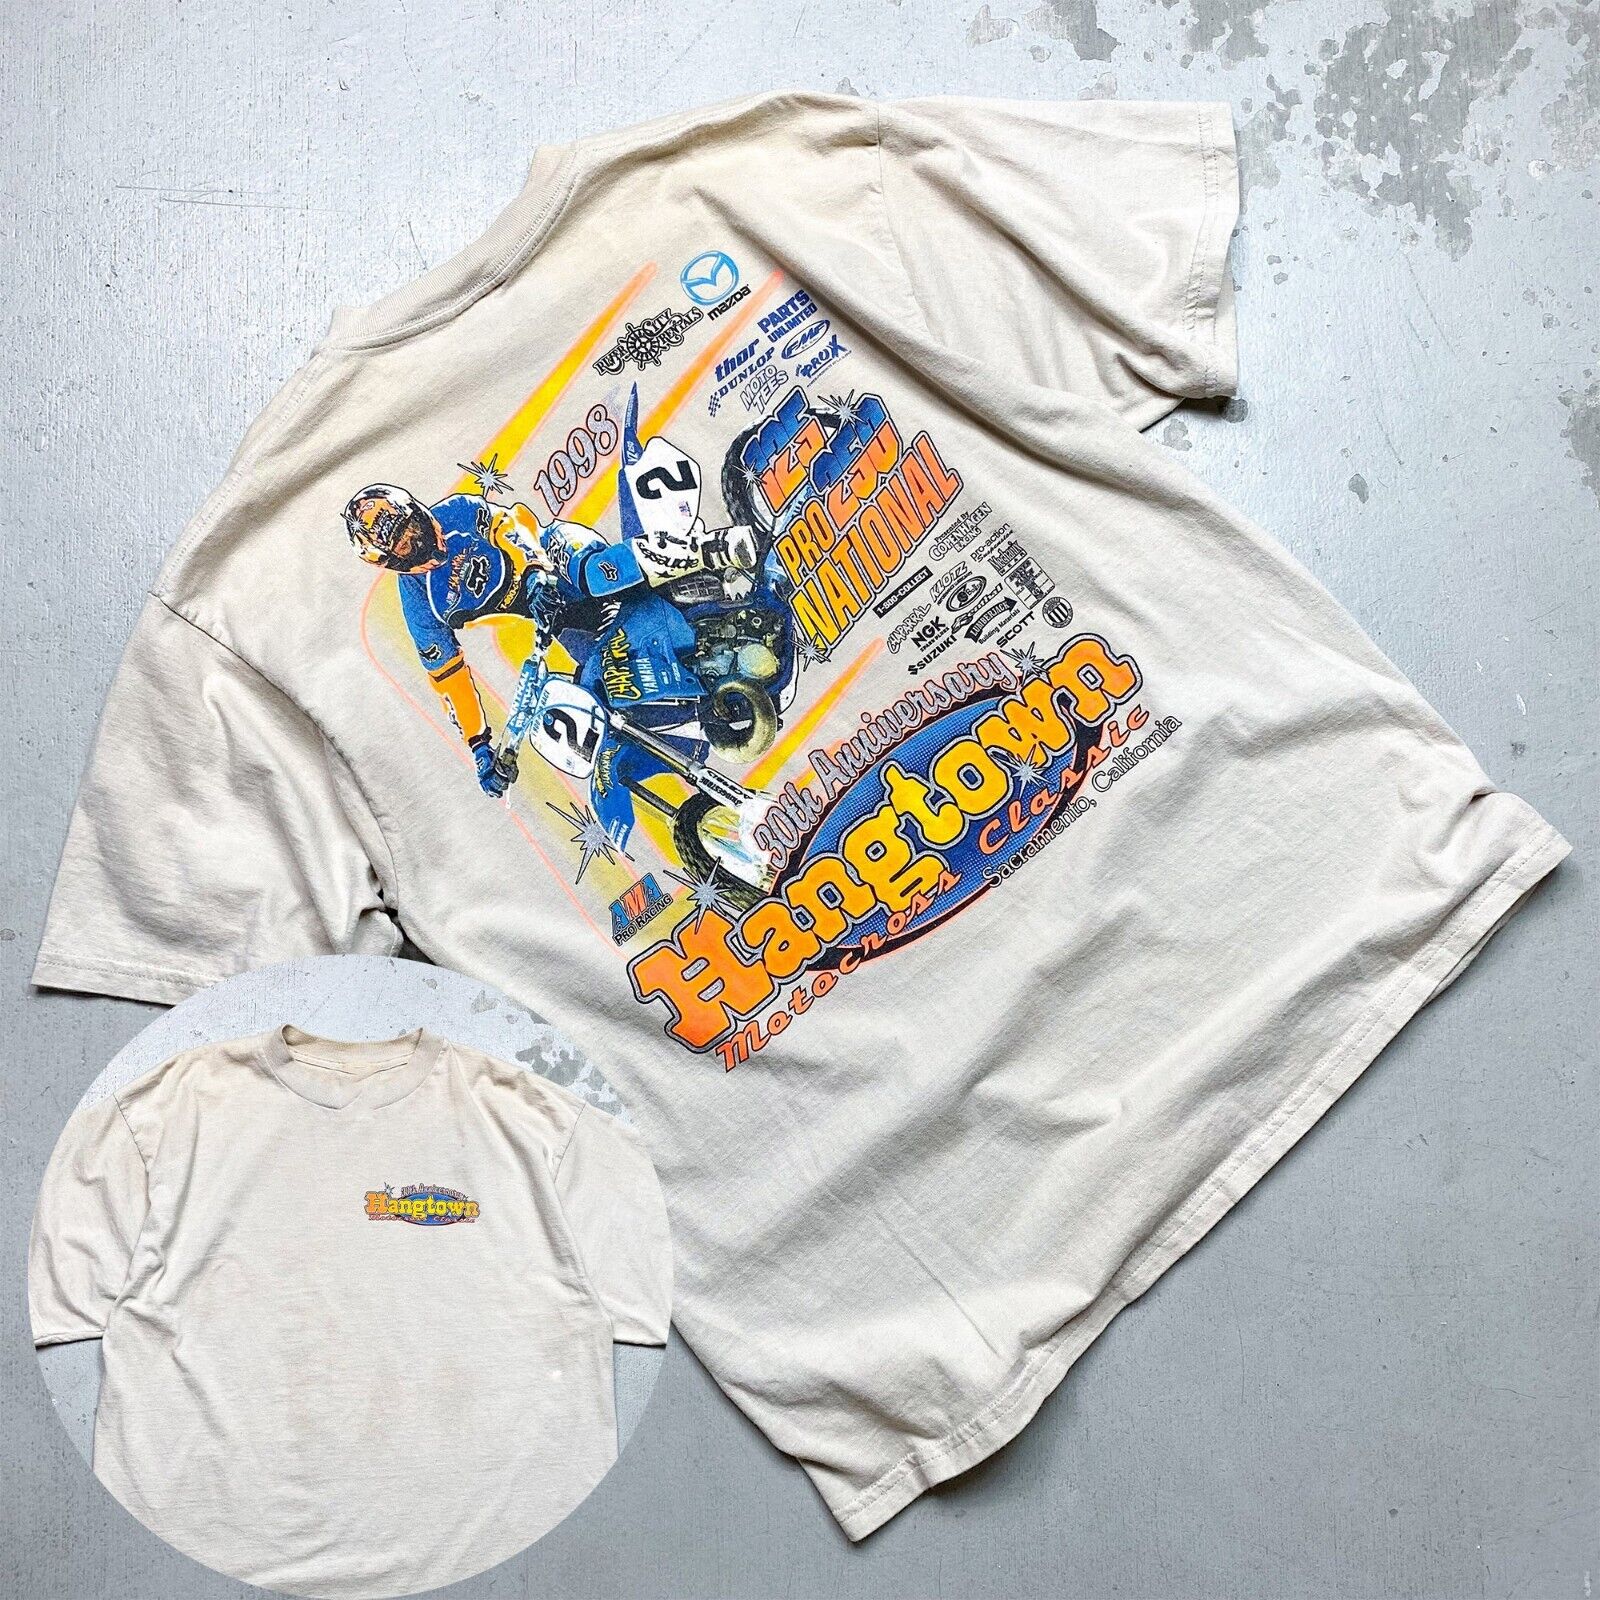 Vintage 1998 Hangtown Motocross National T-Shirt Cotton Unisex Size S-3XL